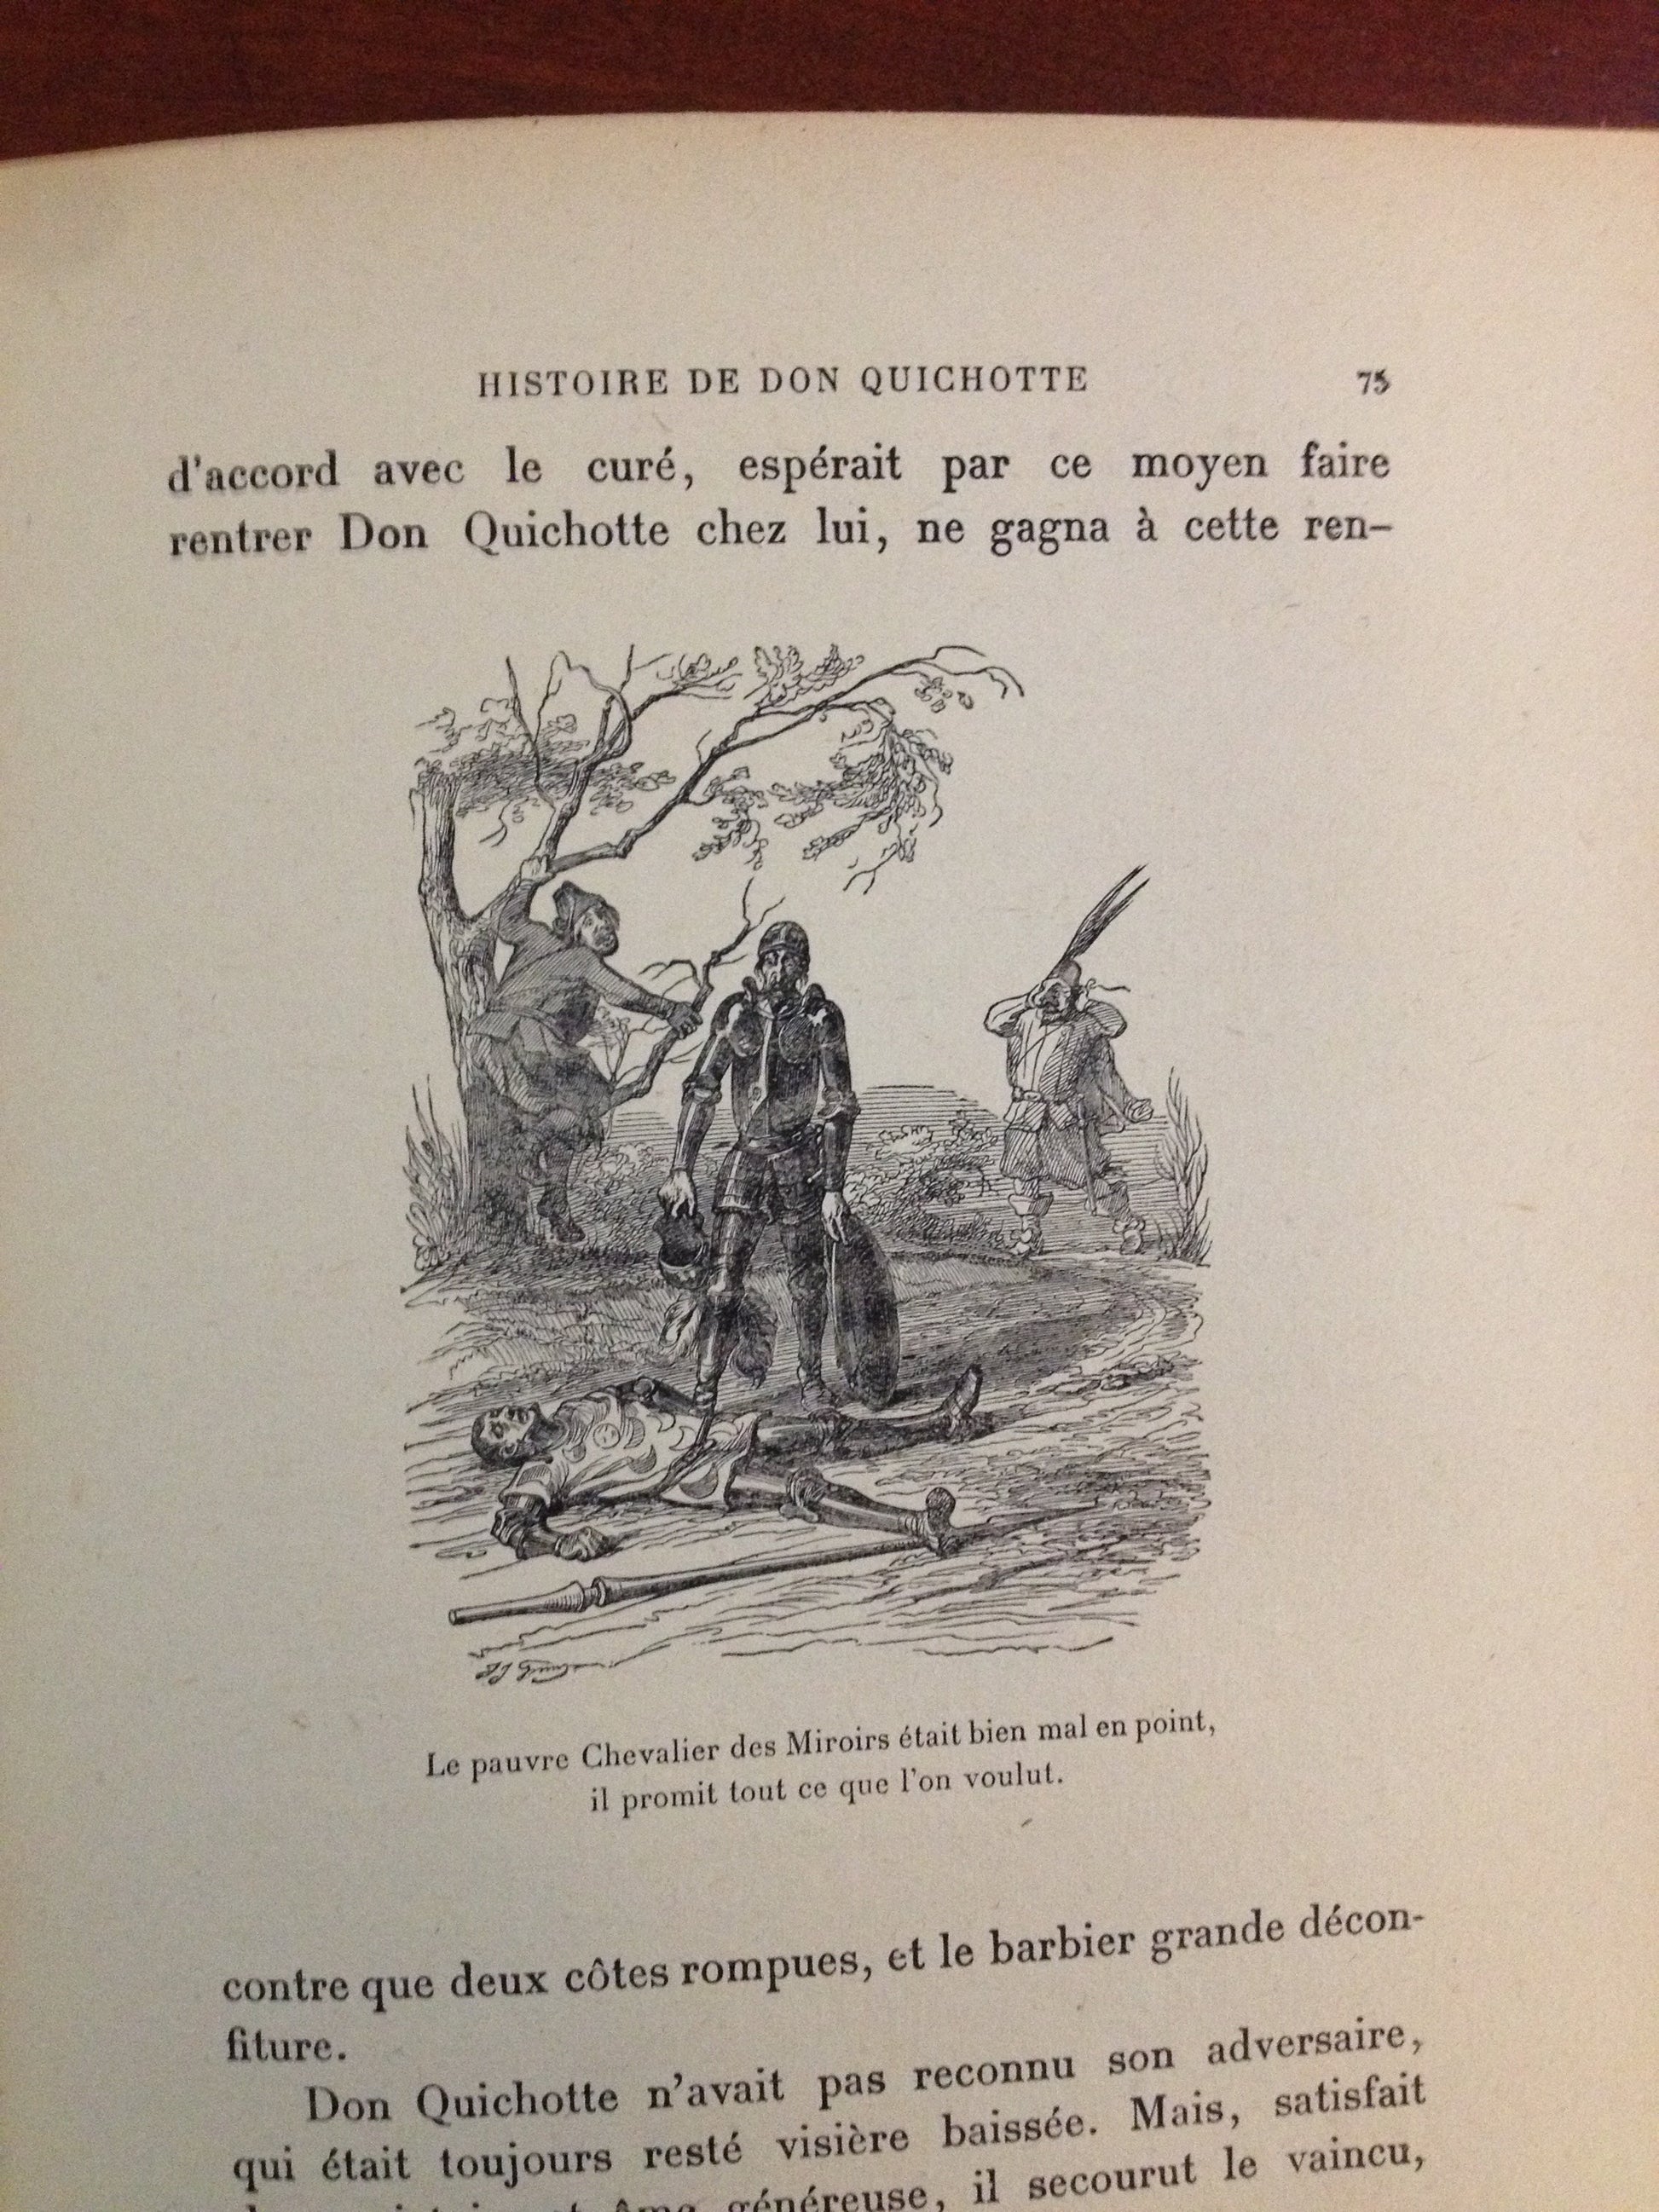 CERVANTES - HISTOIRE DE DON QUICHOTTE  BY:  CERVANTES BooksCardsNBikes